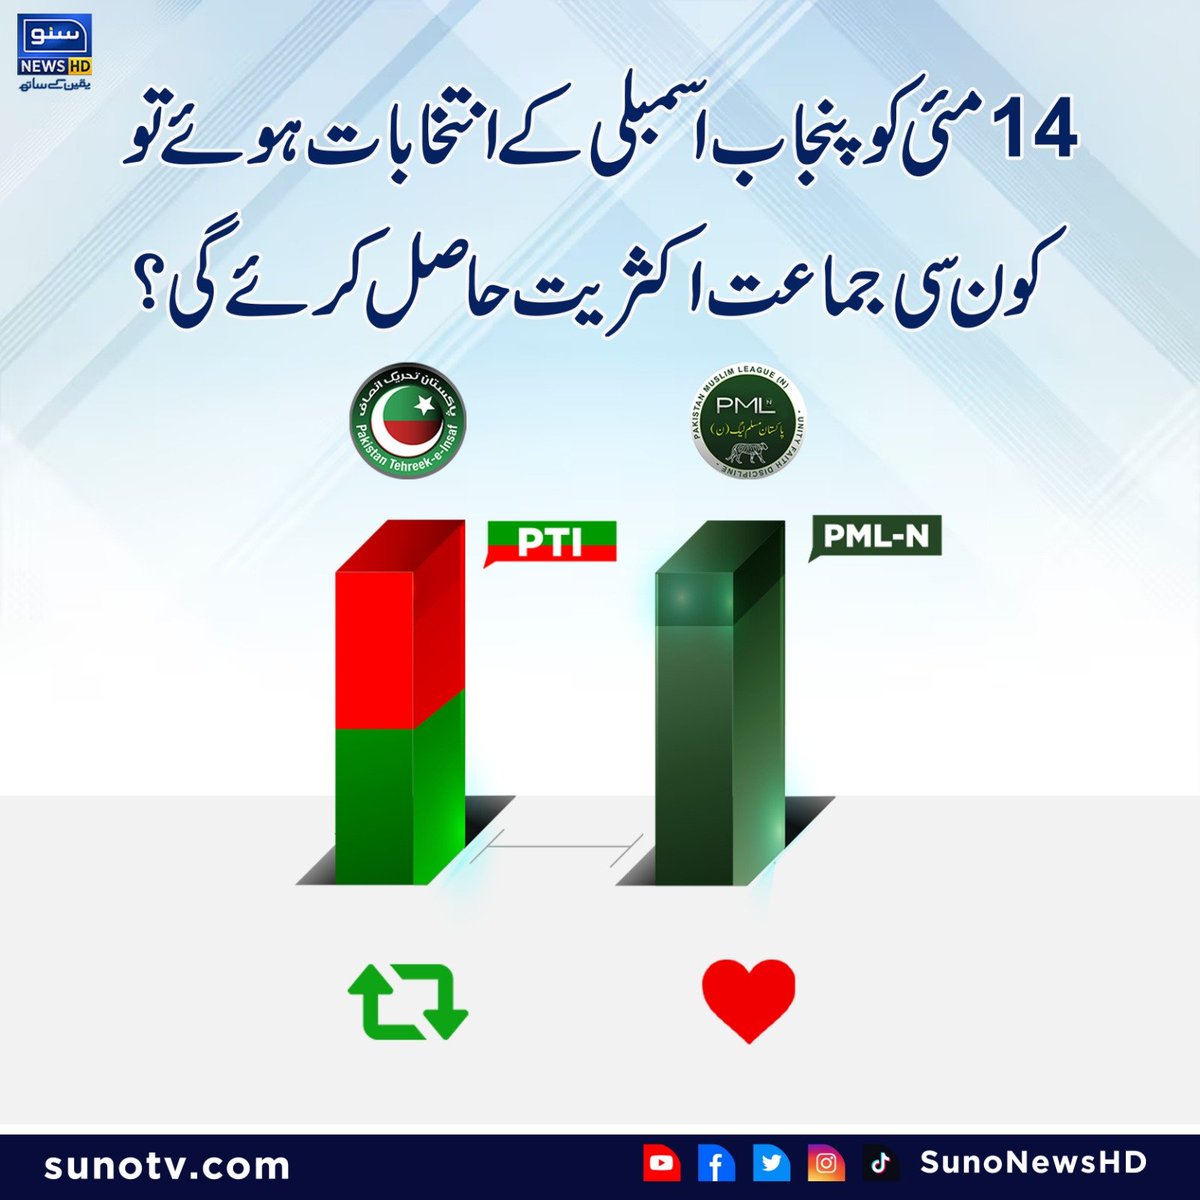 14مئی کو پنجاب اسمبلی کے انتخابات ہوئے تو کون سی جماعت اکثریت حاصل کرئے گی؟ اپنی رائے کا اظہار کریں ! پاکستان تحریک انصاف🔄۔۔۔۔۔۔۔ مسلم لیگ ن ❤ #sunonewshd #Punjab #Election #MaryamNawaz #imrankhanPTI #PTI #PMLN